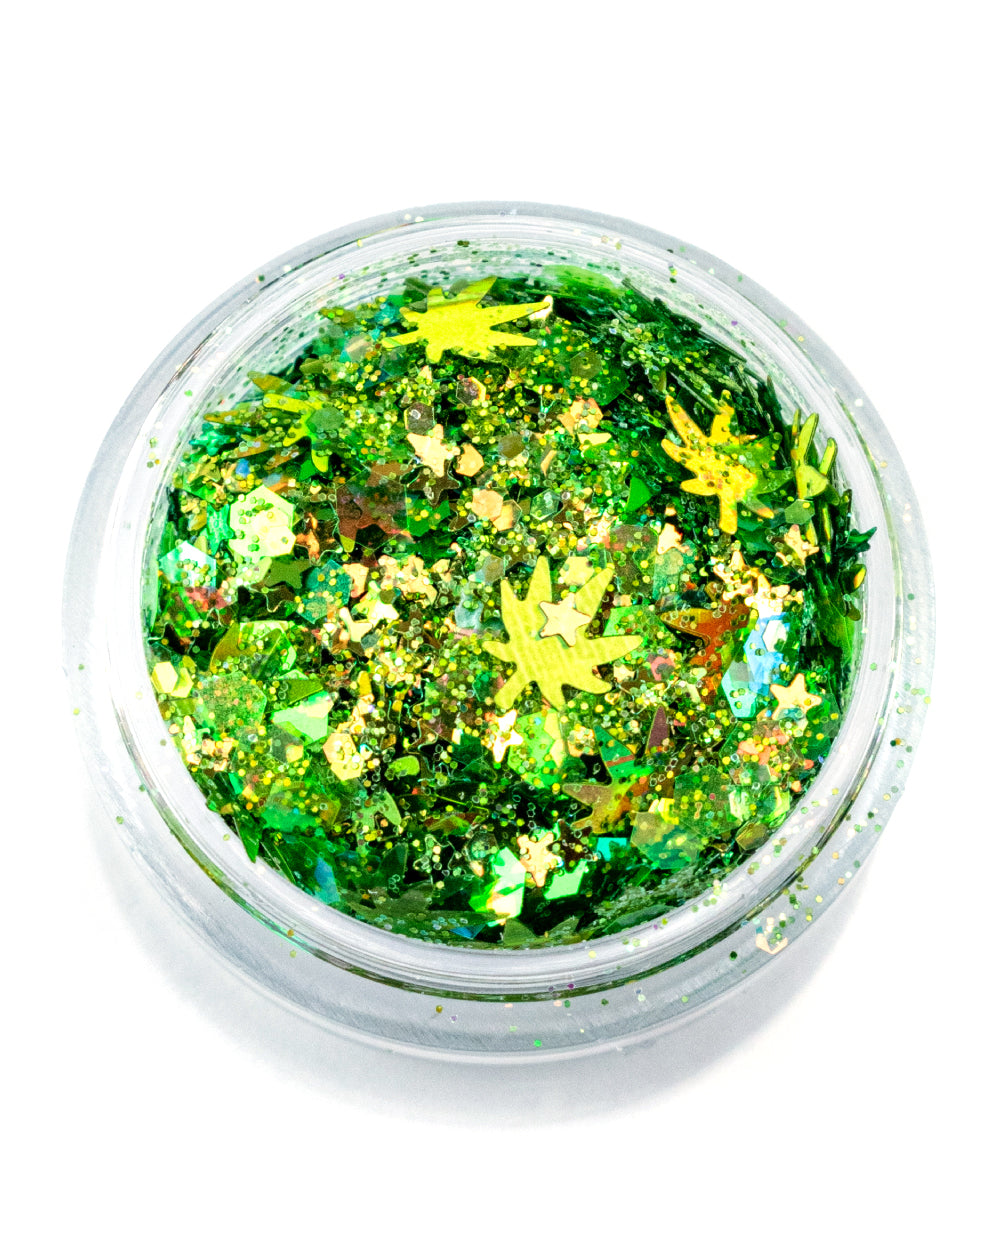 Mary Jane - Green Leaf Chunky Glitter - Lunautics Chunky Glitter